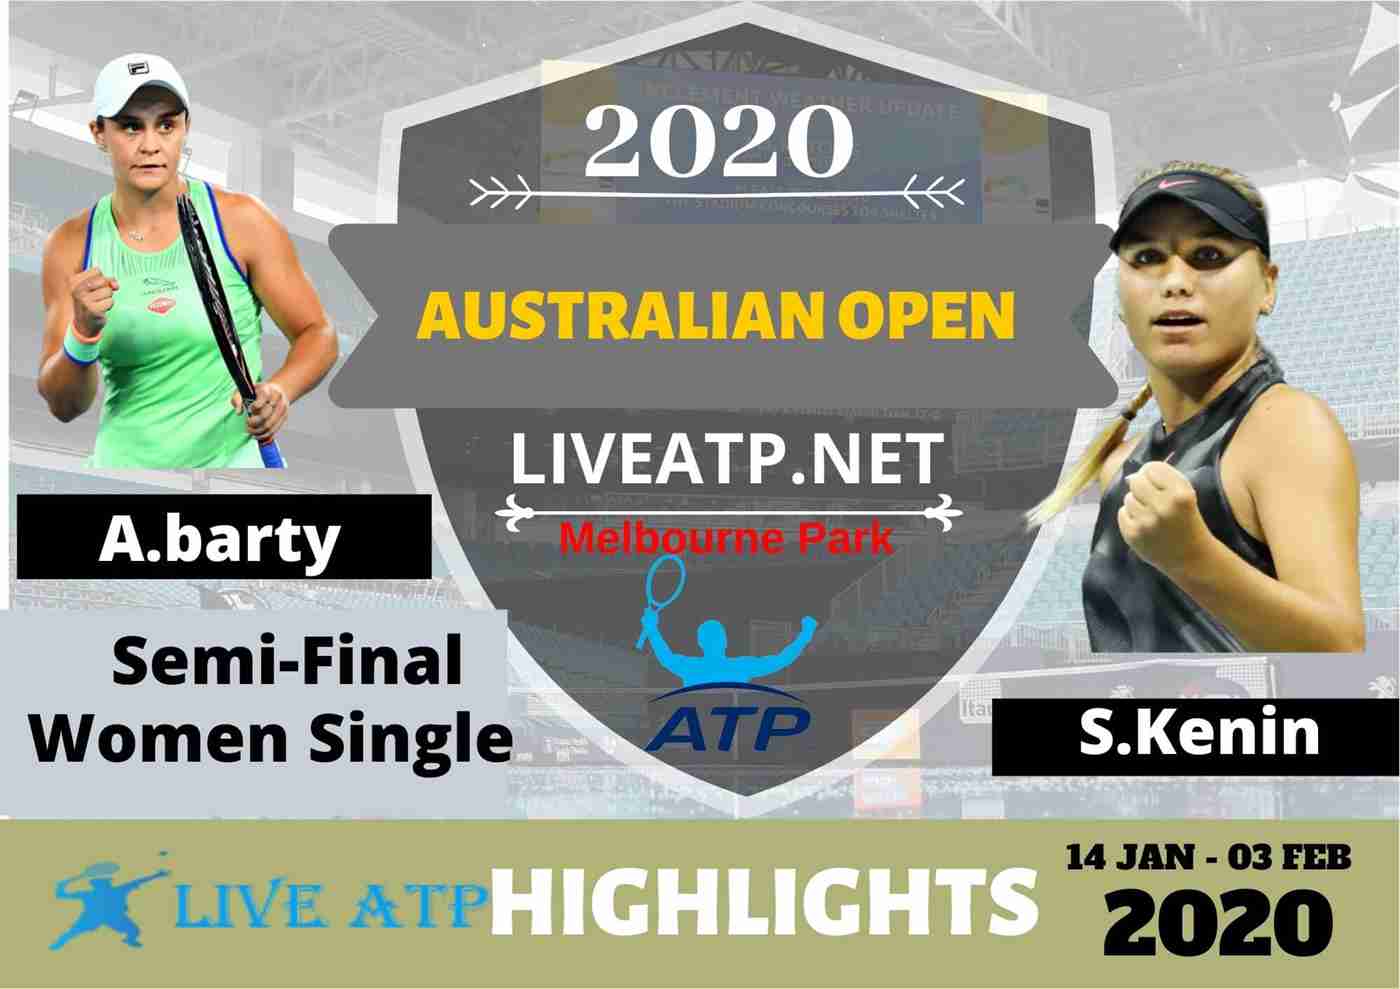 Aus Open A Barty Vs S Kenin Highlights 2020 Semifinal